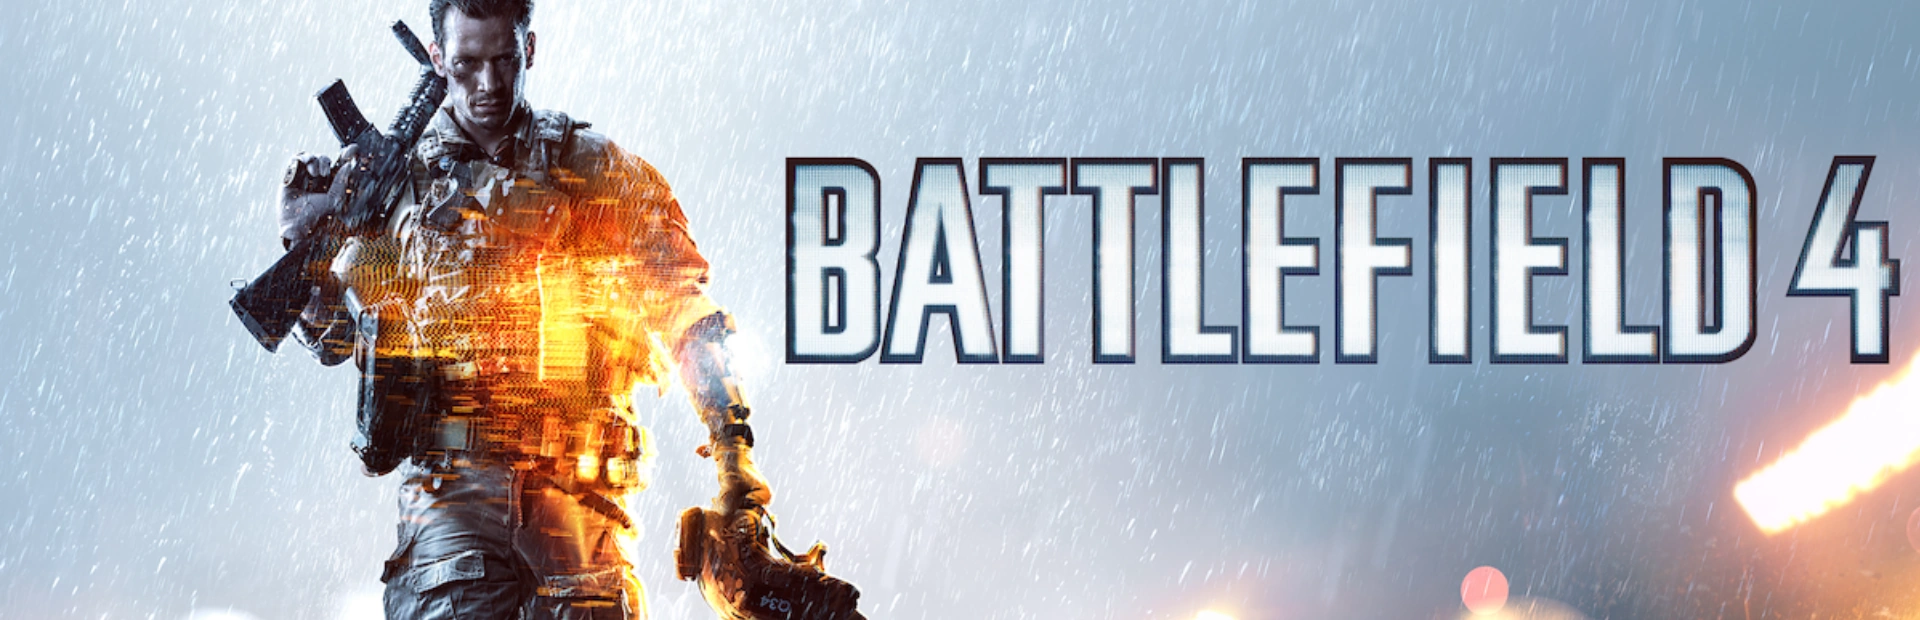 Battlefield 4.banner2